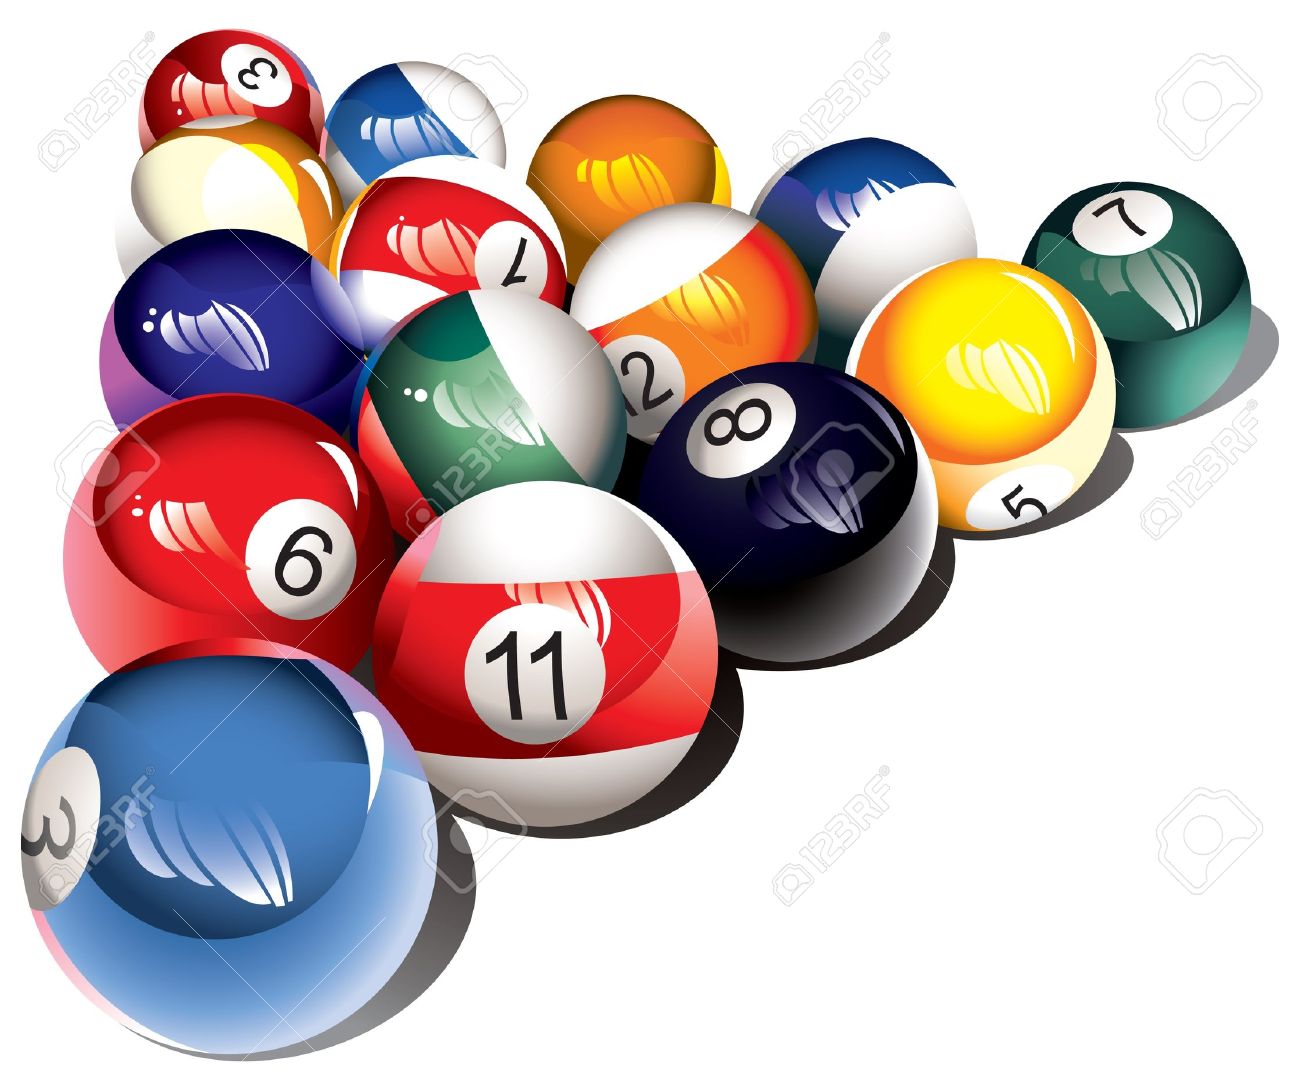 8 ball billiards rack